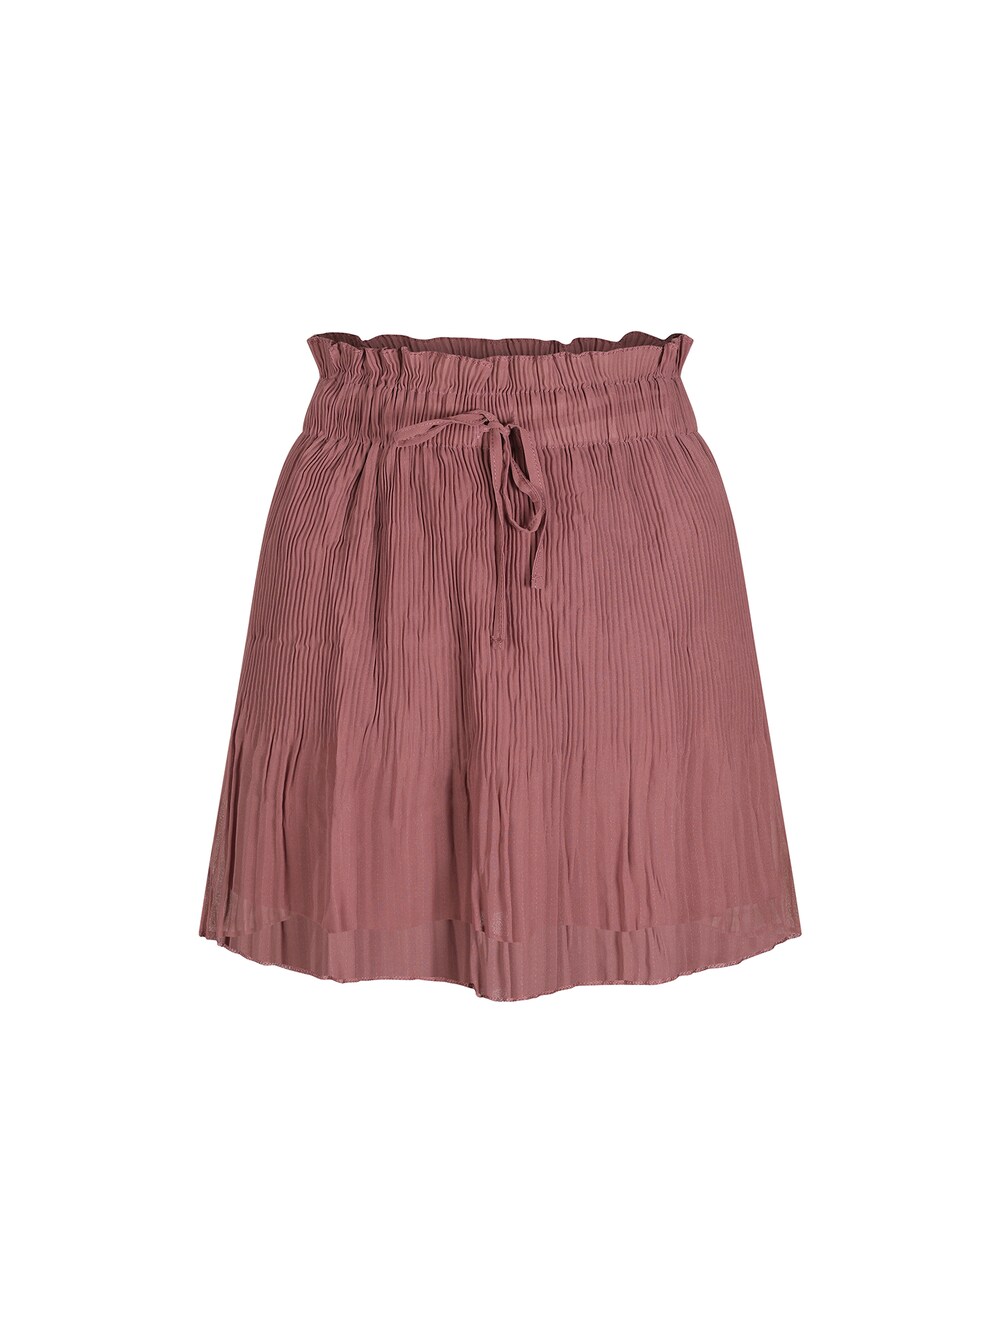 Юбка Freshlions Calista, темно-розовый юбка calista базовая 40 размер